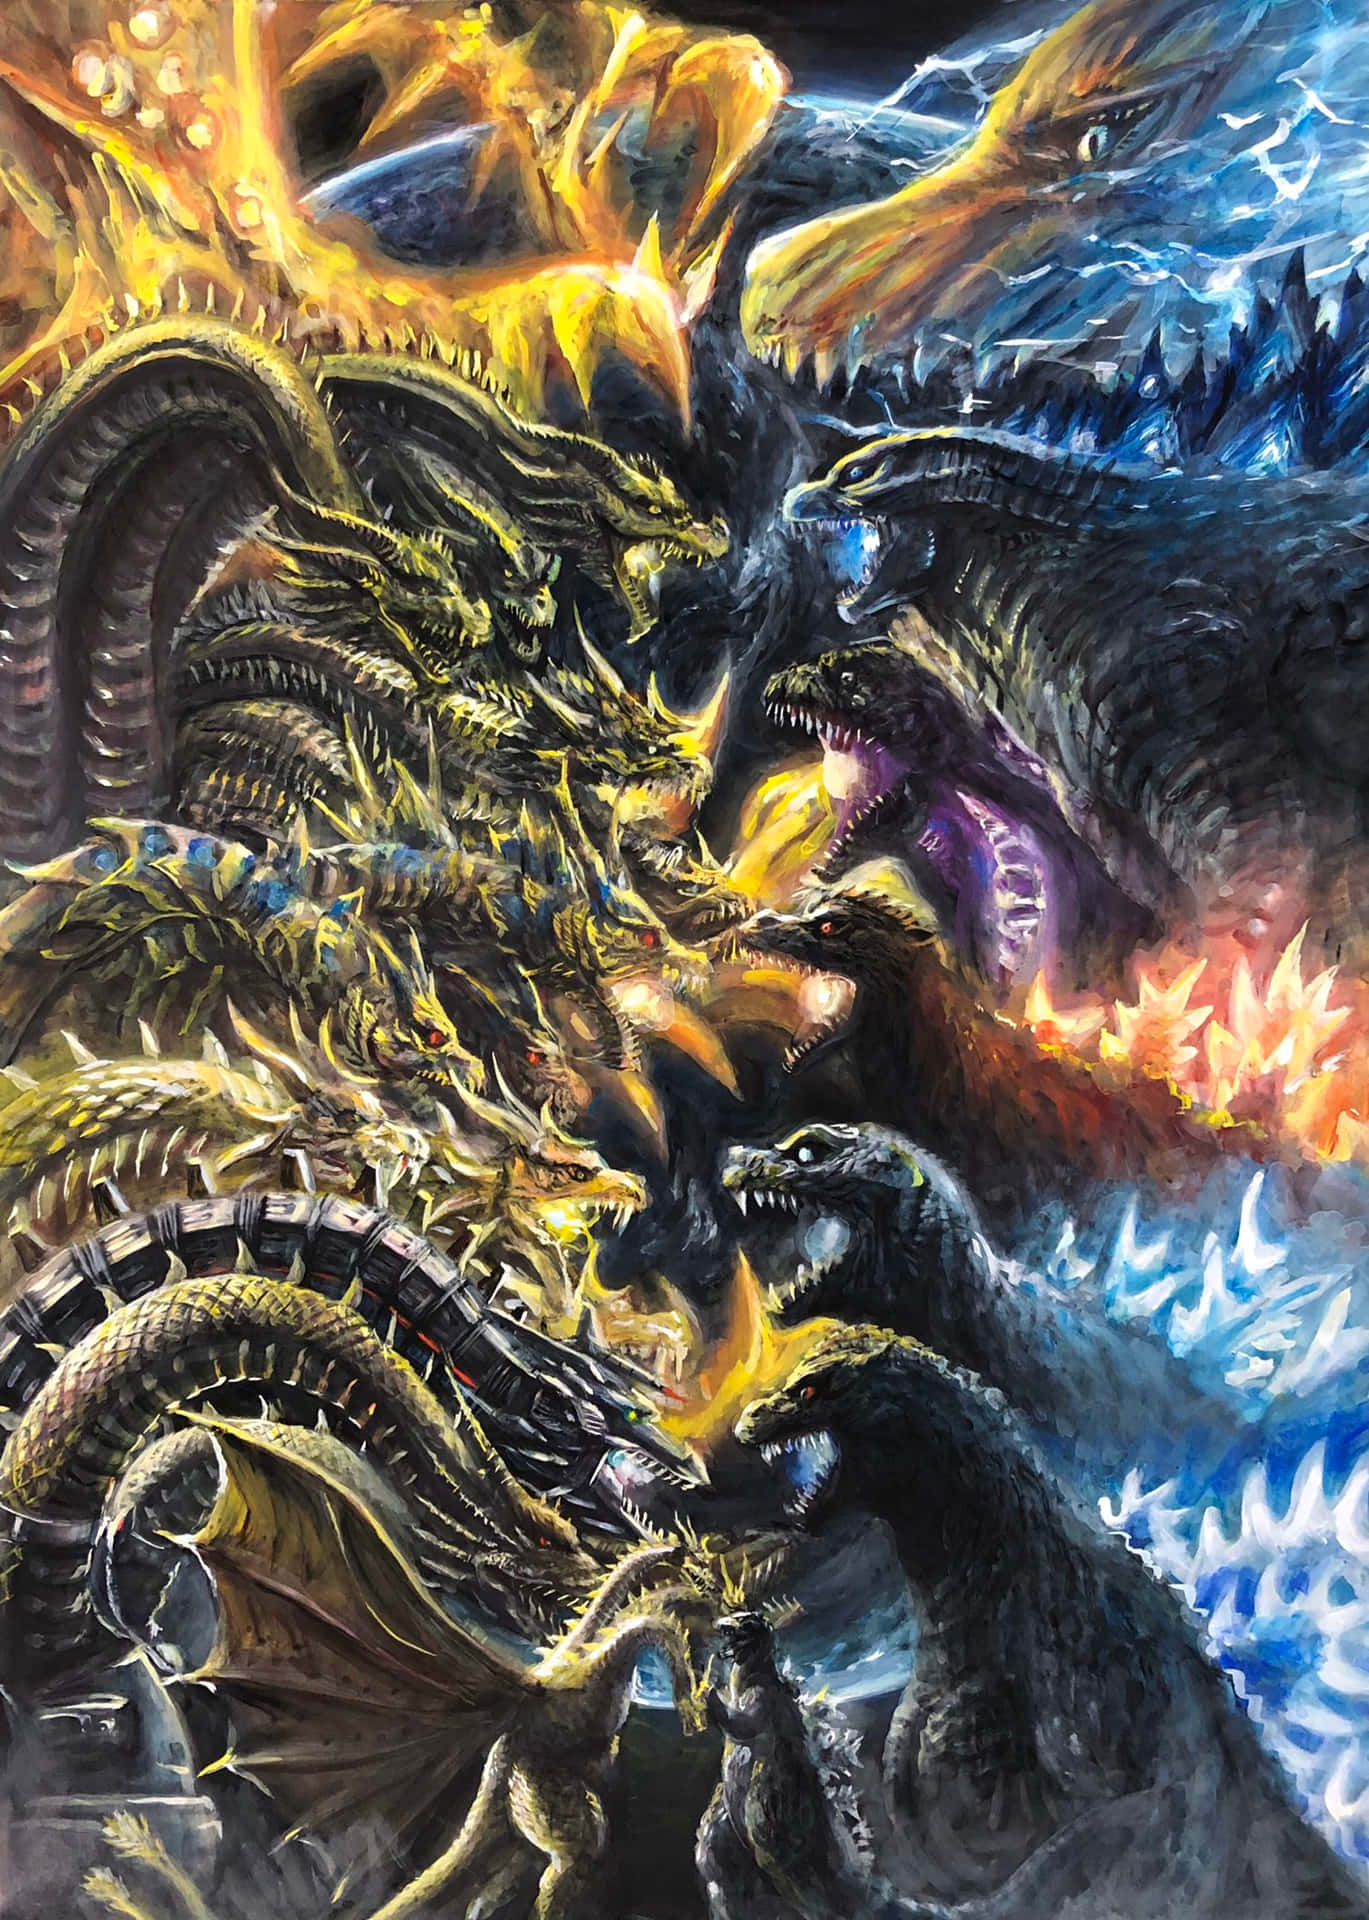 prompthunt: Heisei era Godzilla fighting King Ghidorah